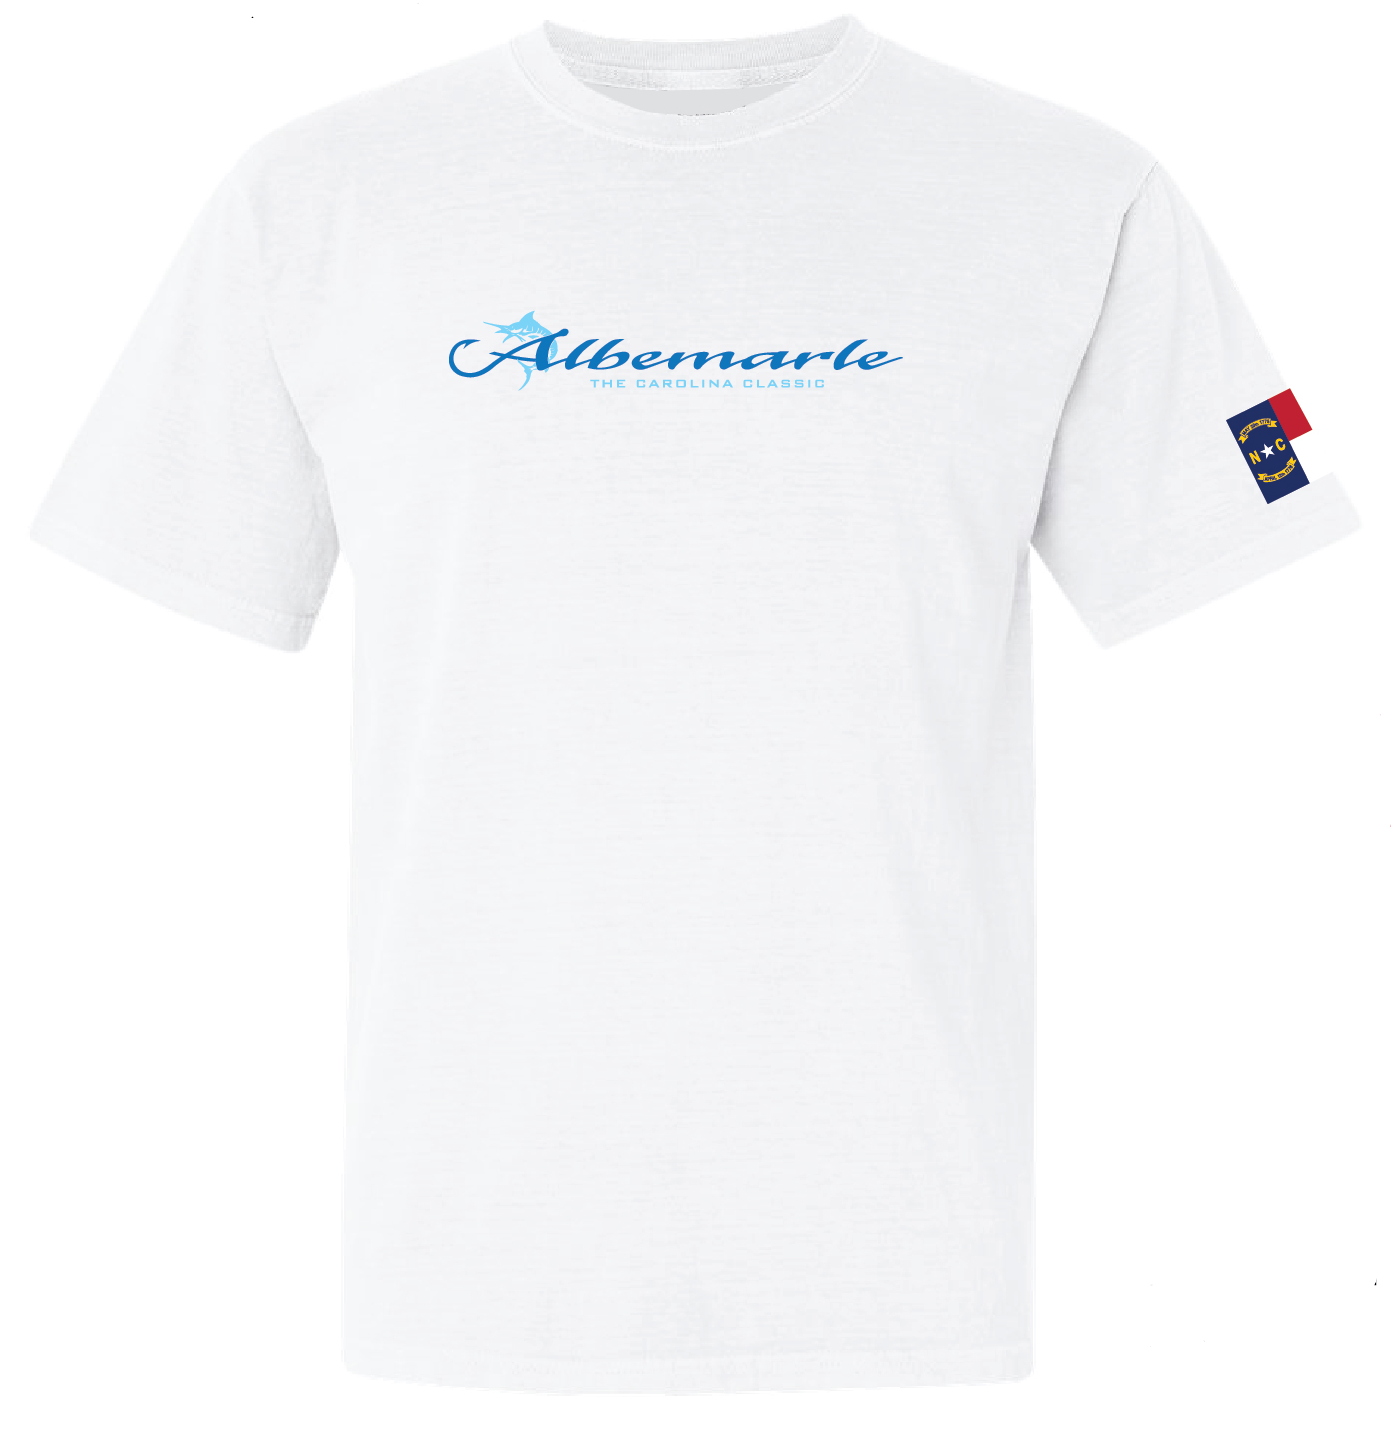 Albemarle Boats Carolina Strong Shirt